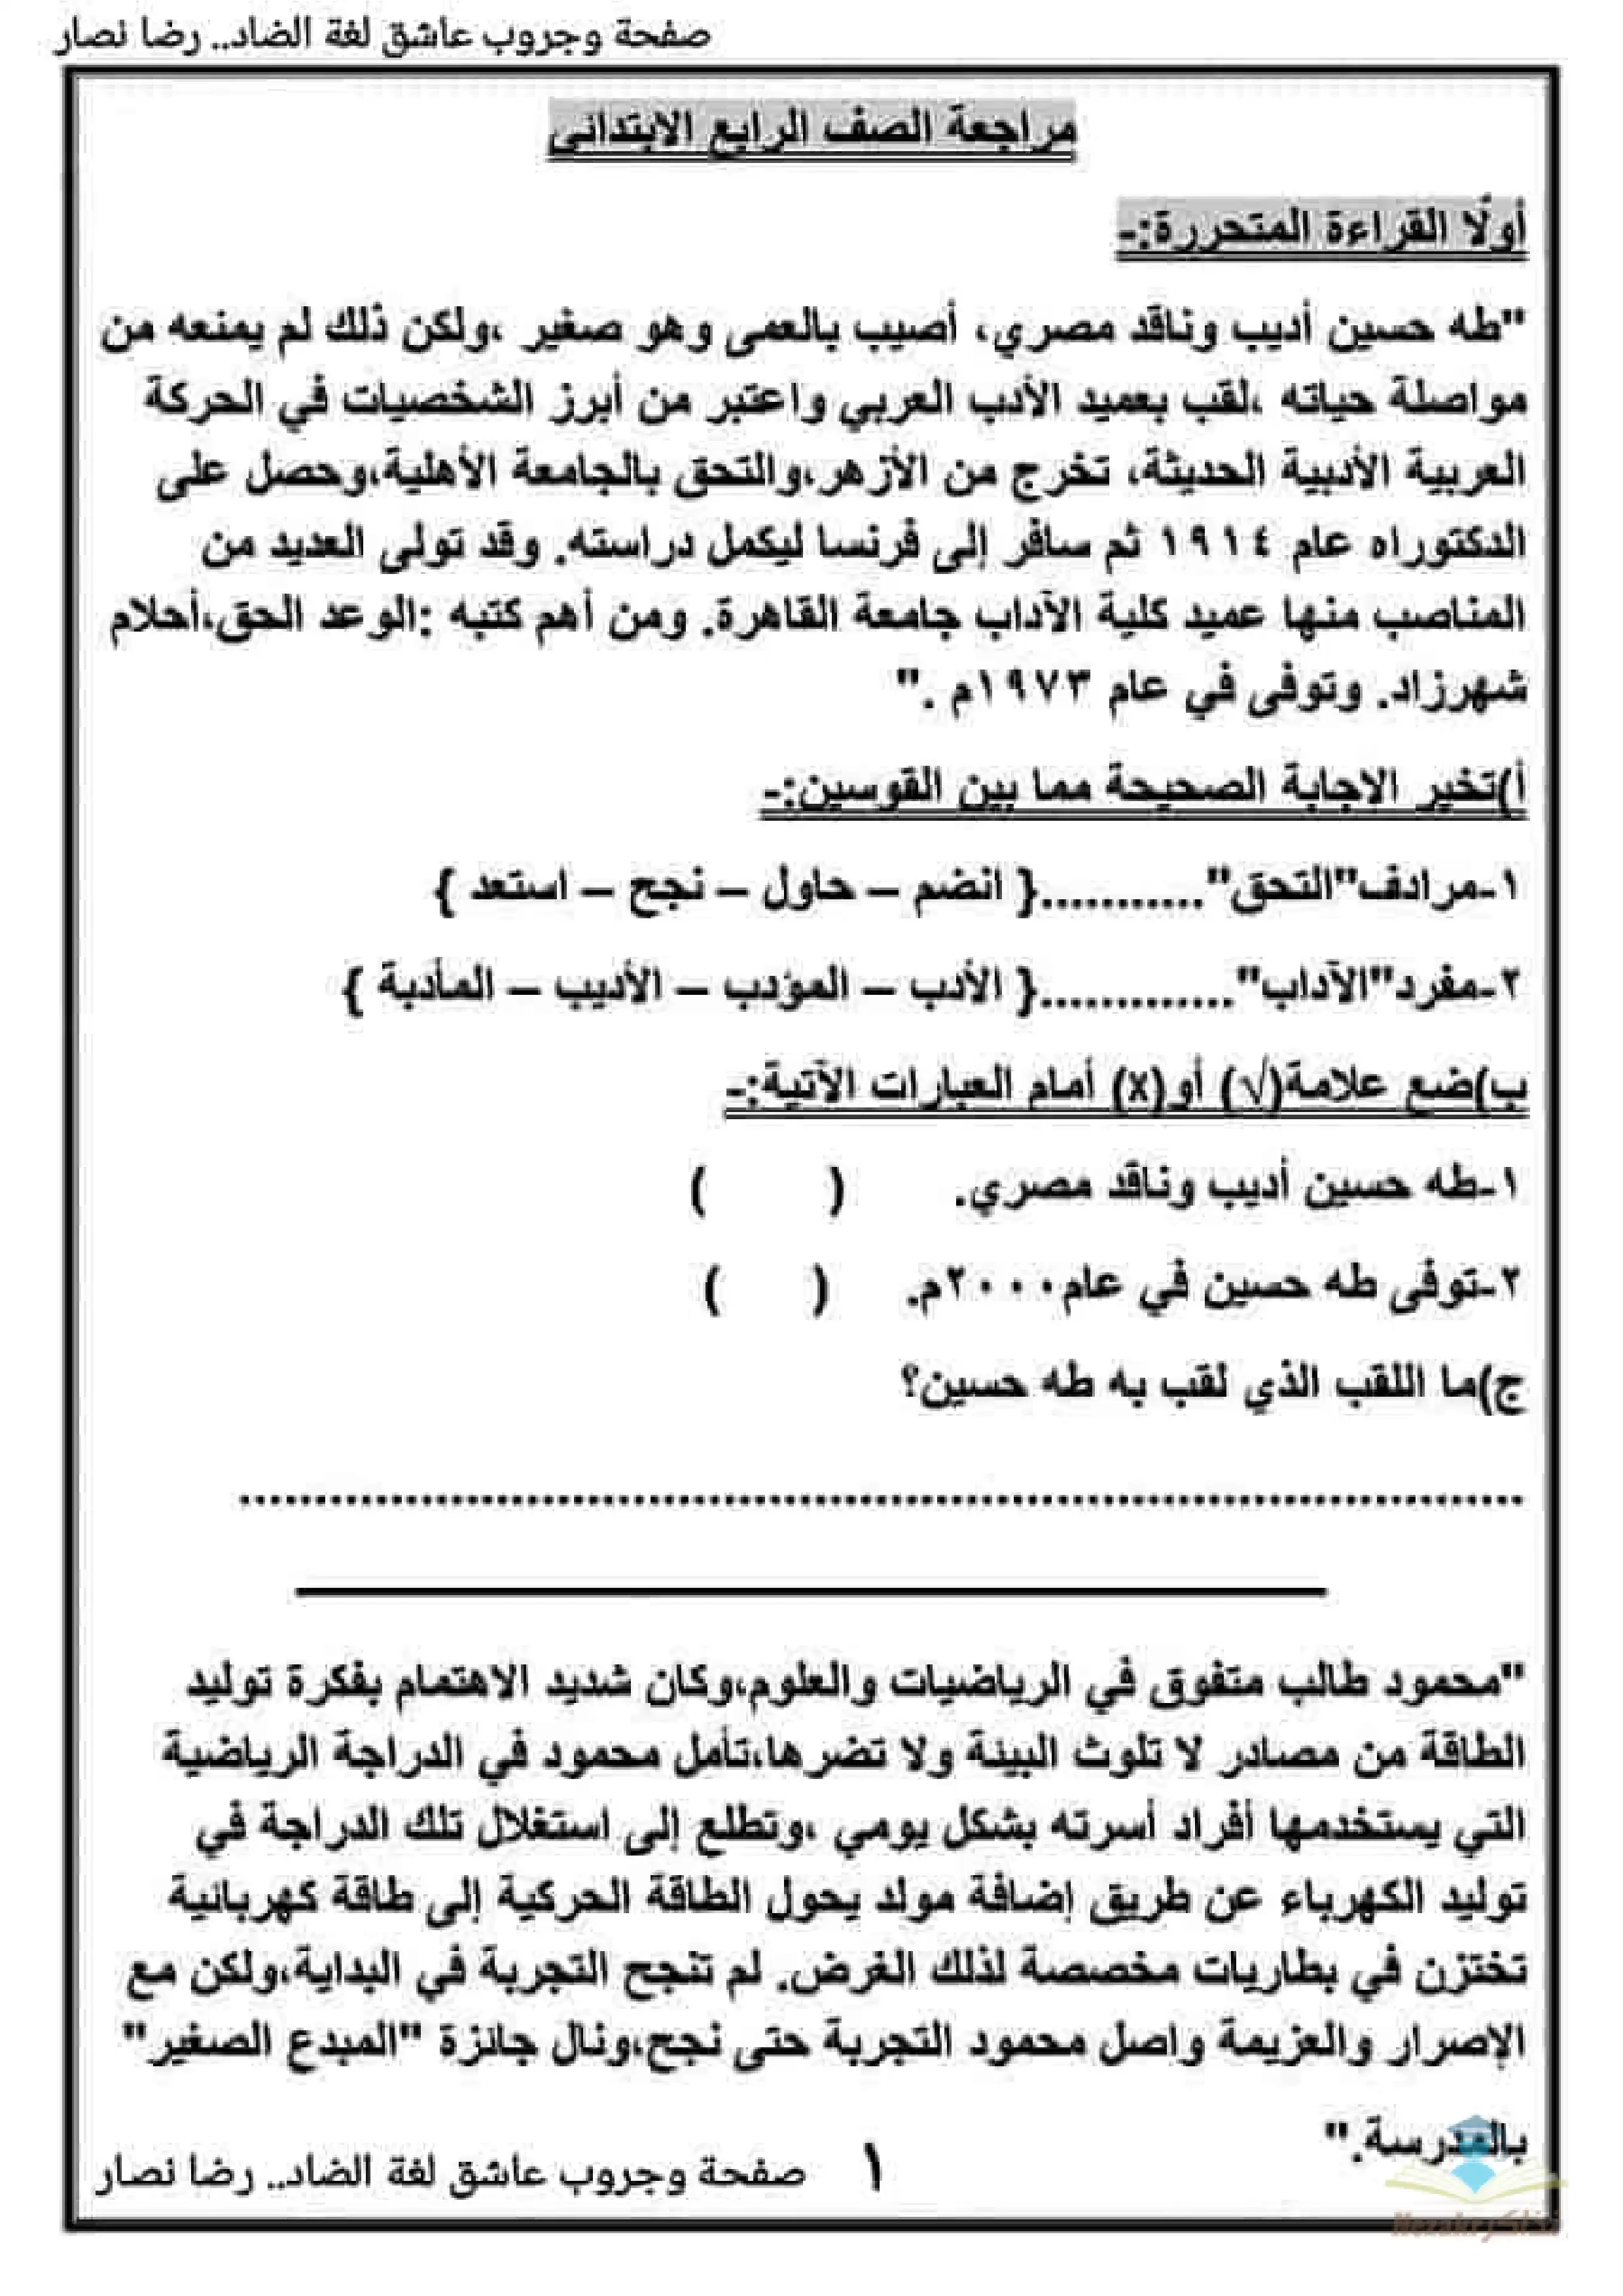 مذكرة مراجعة نهائية لغة عربية للصف الرابع الابتدائي الترم الثاني